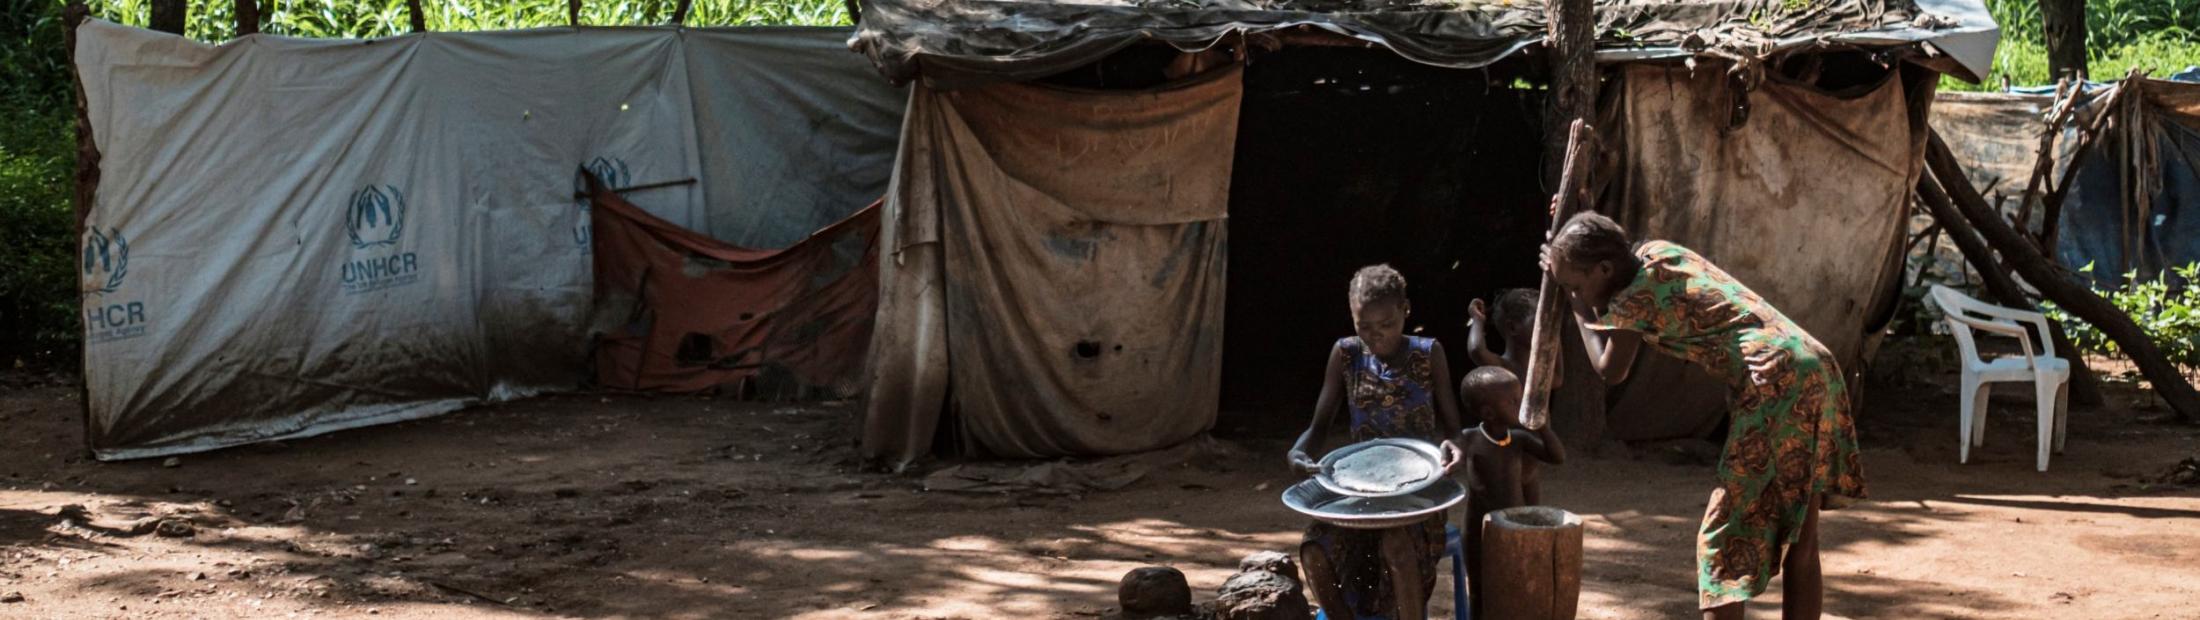 Seguridad energética en los campos de personas refugiadas de Etiopía